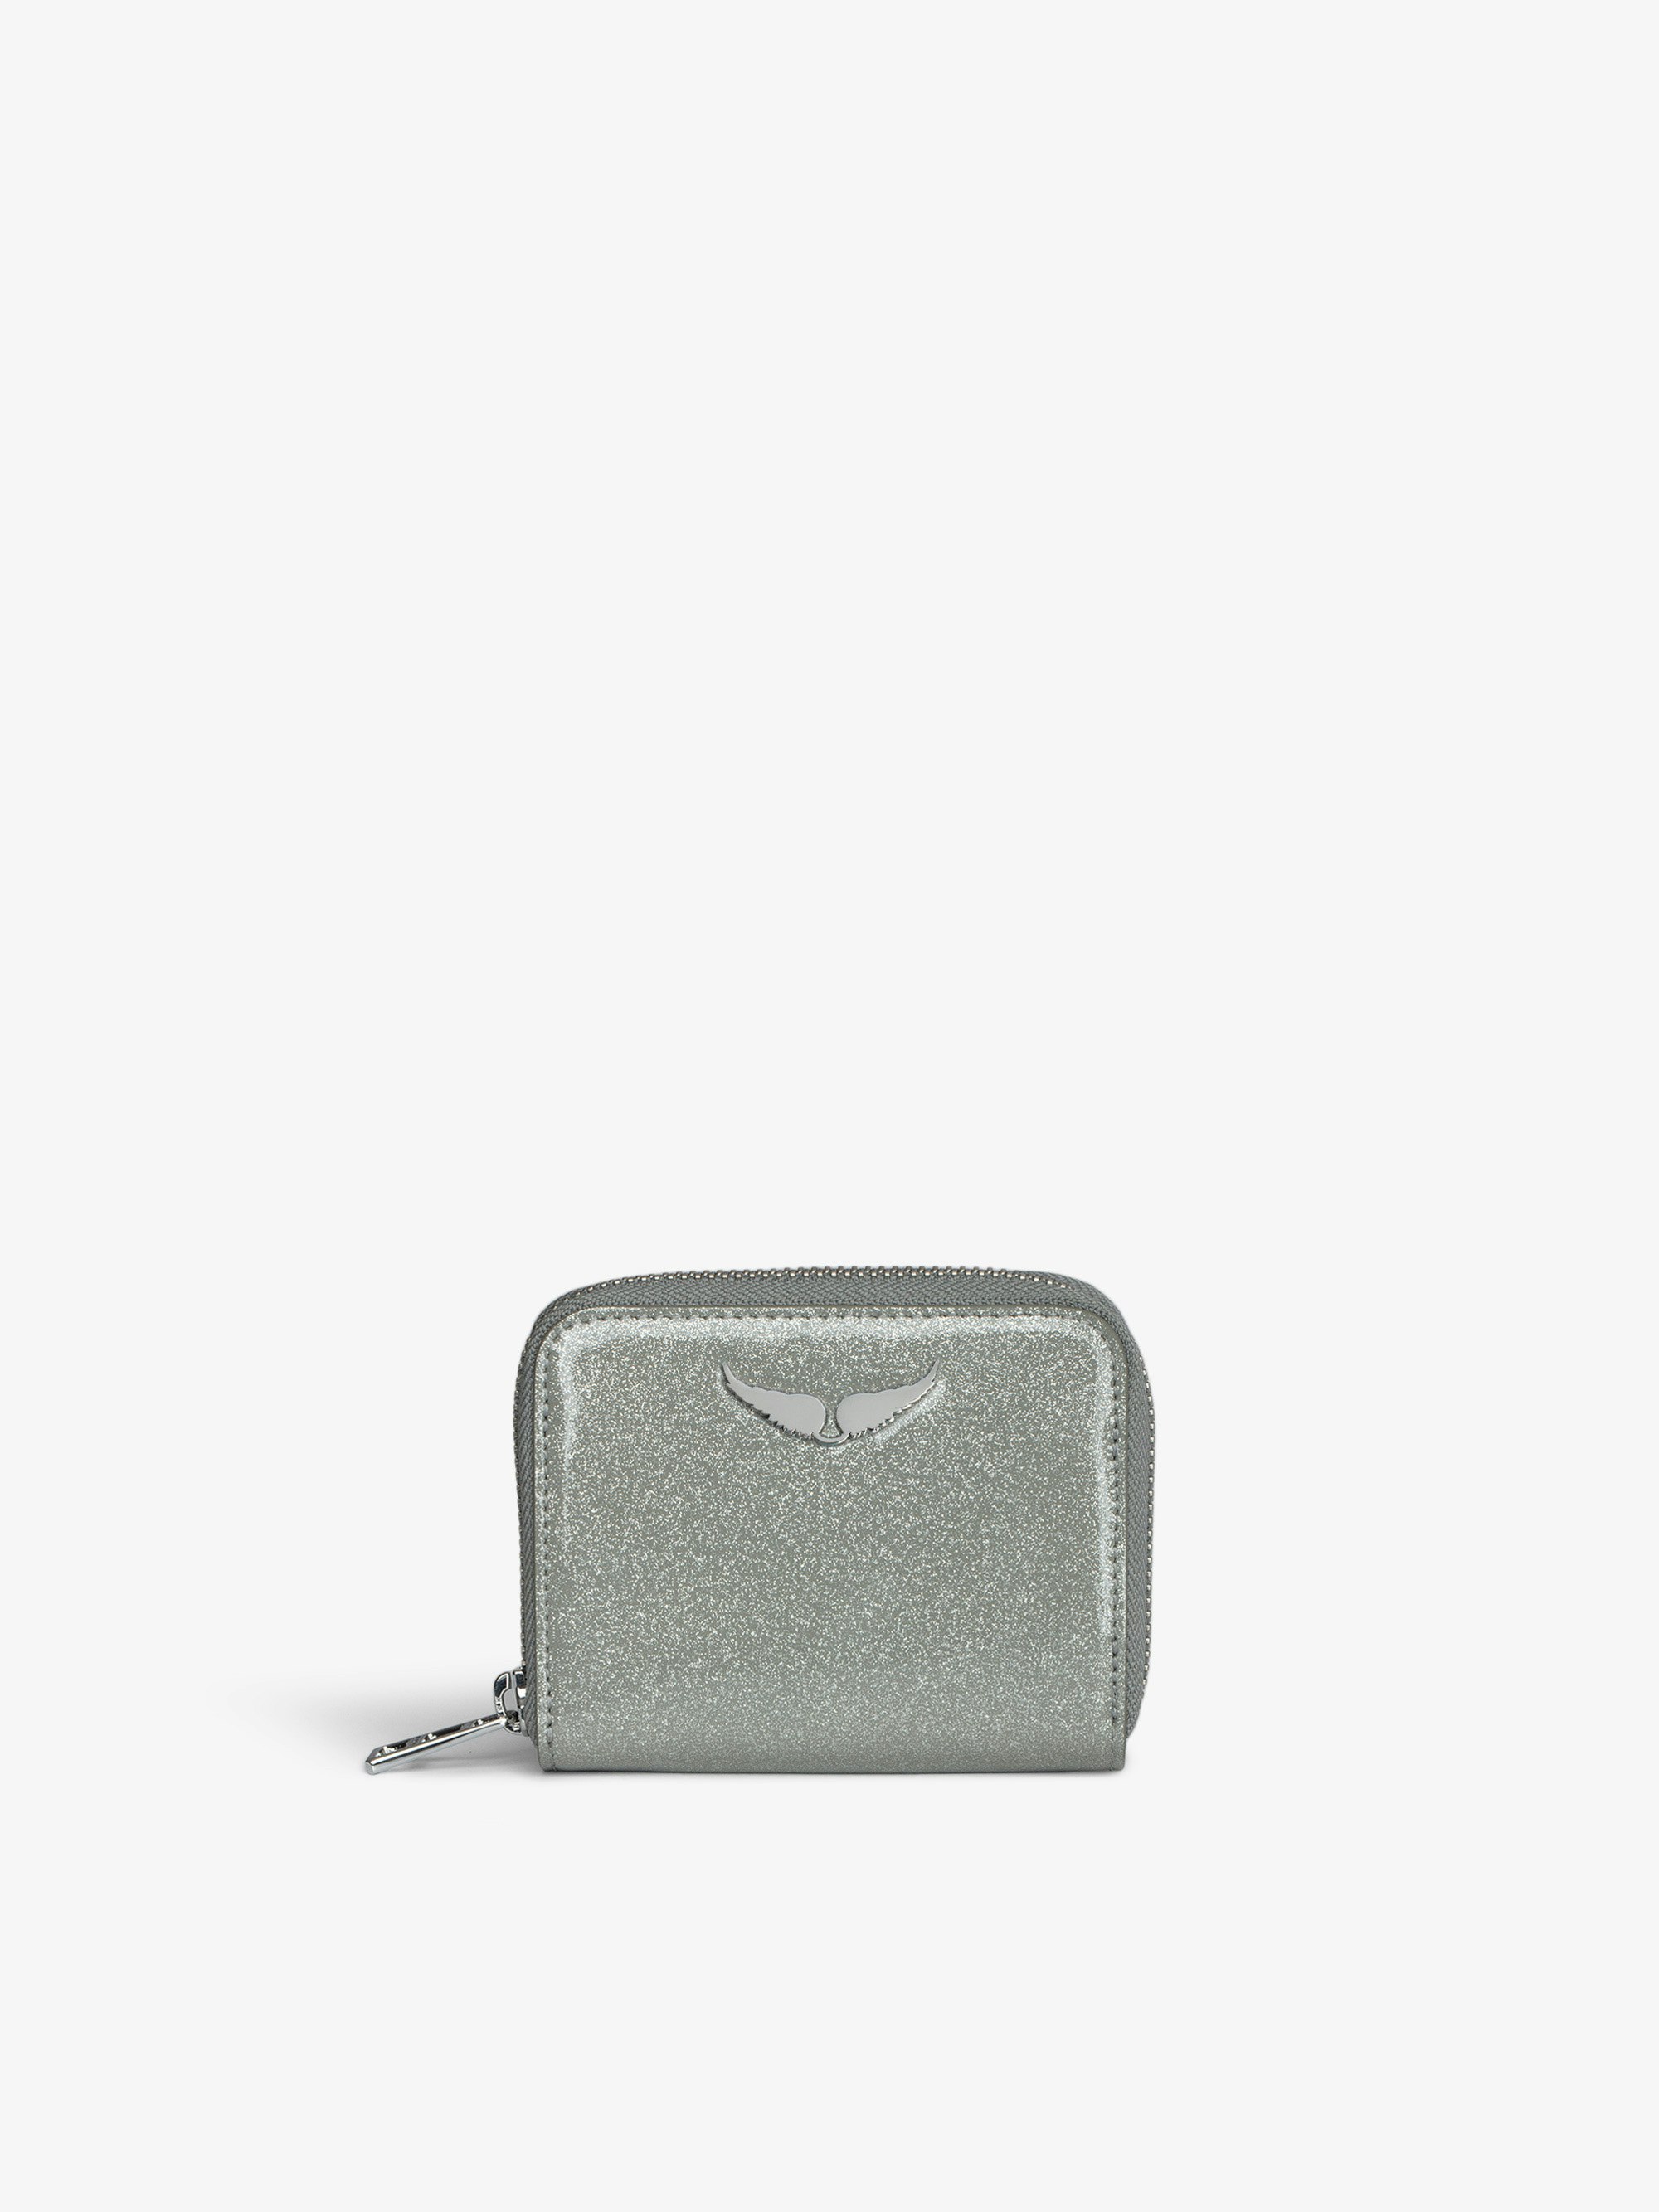 Porte-Monnaie Mini ZV Infinity Patent - Portefeuille en cuir vernis pailleté argenté orné d'un charm ailes.